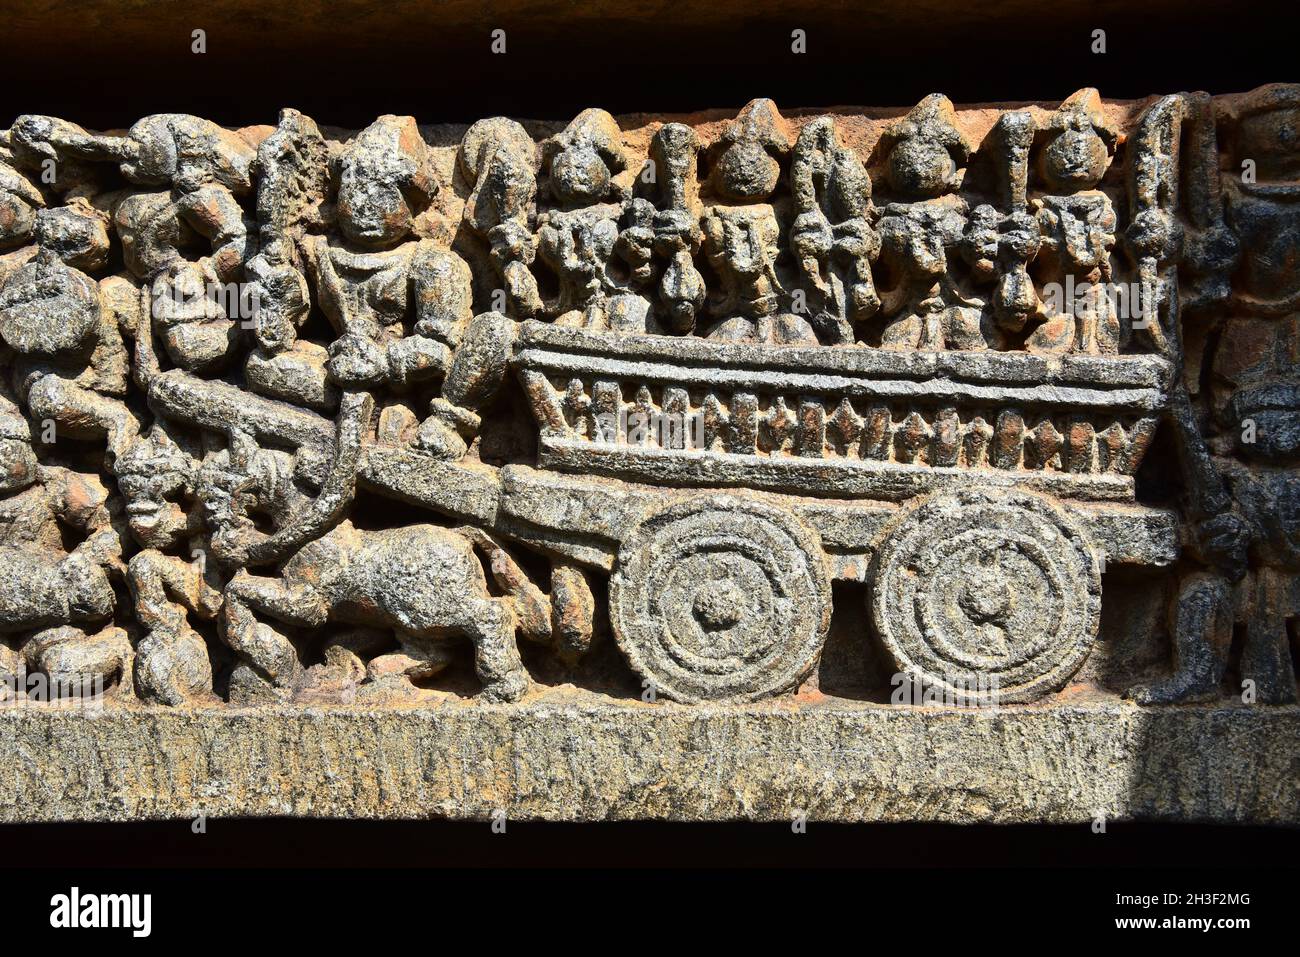 Steinschnitzerei von Karren in somnathpur, mysore, india.this hindu-Tempel ist berühmt für komplizierte Steinschnitzereien. Stockfoto